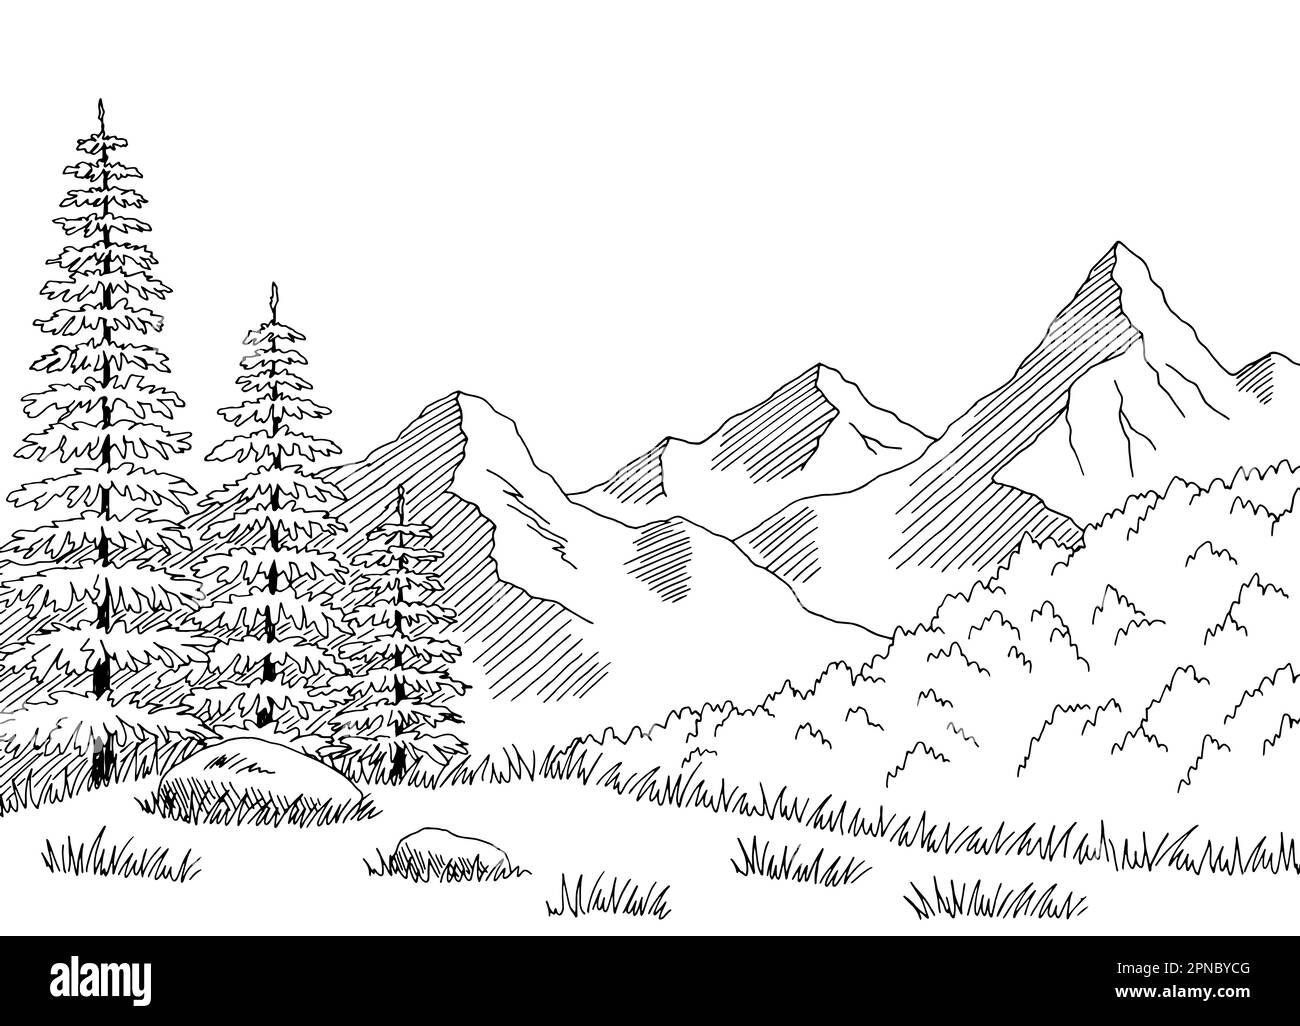 Taïga forêt montagnes colline graphique noir blanc paysage esquisse illustration vecteur Illustration de Vecteur